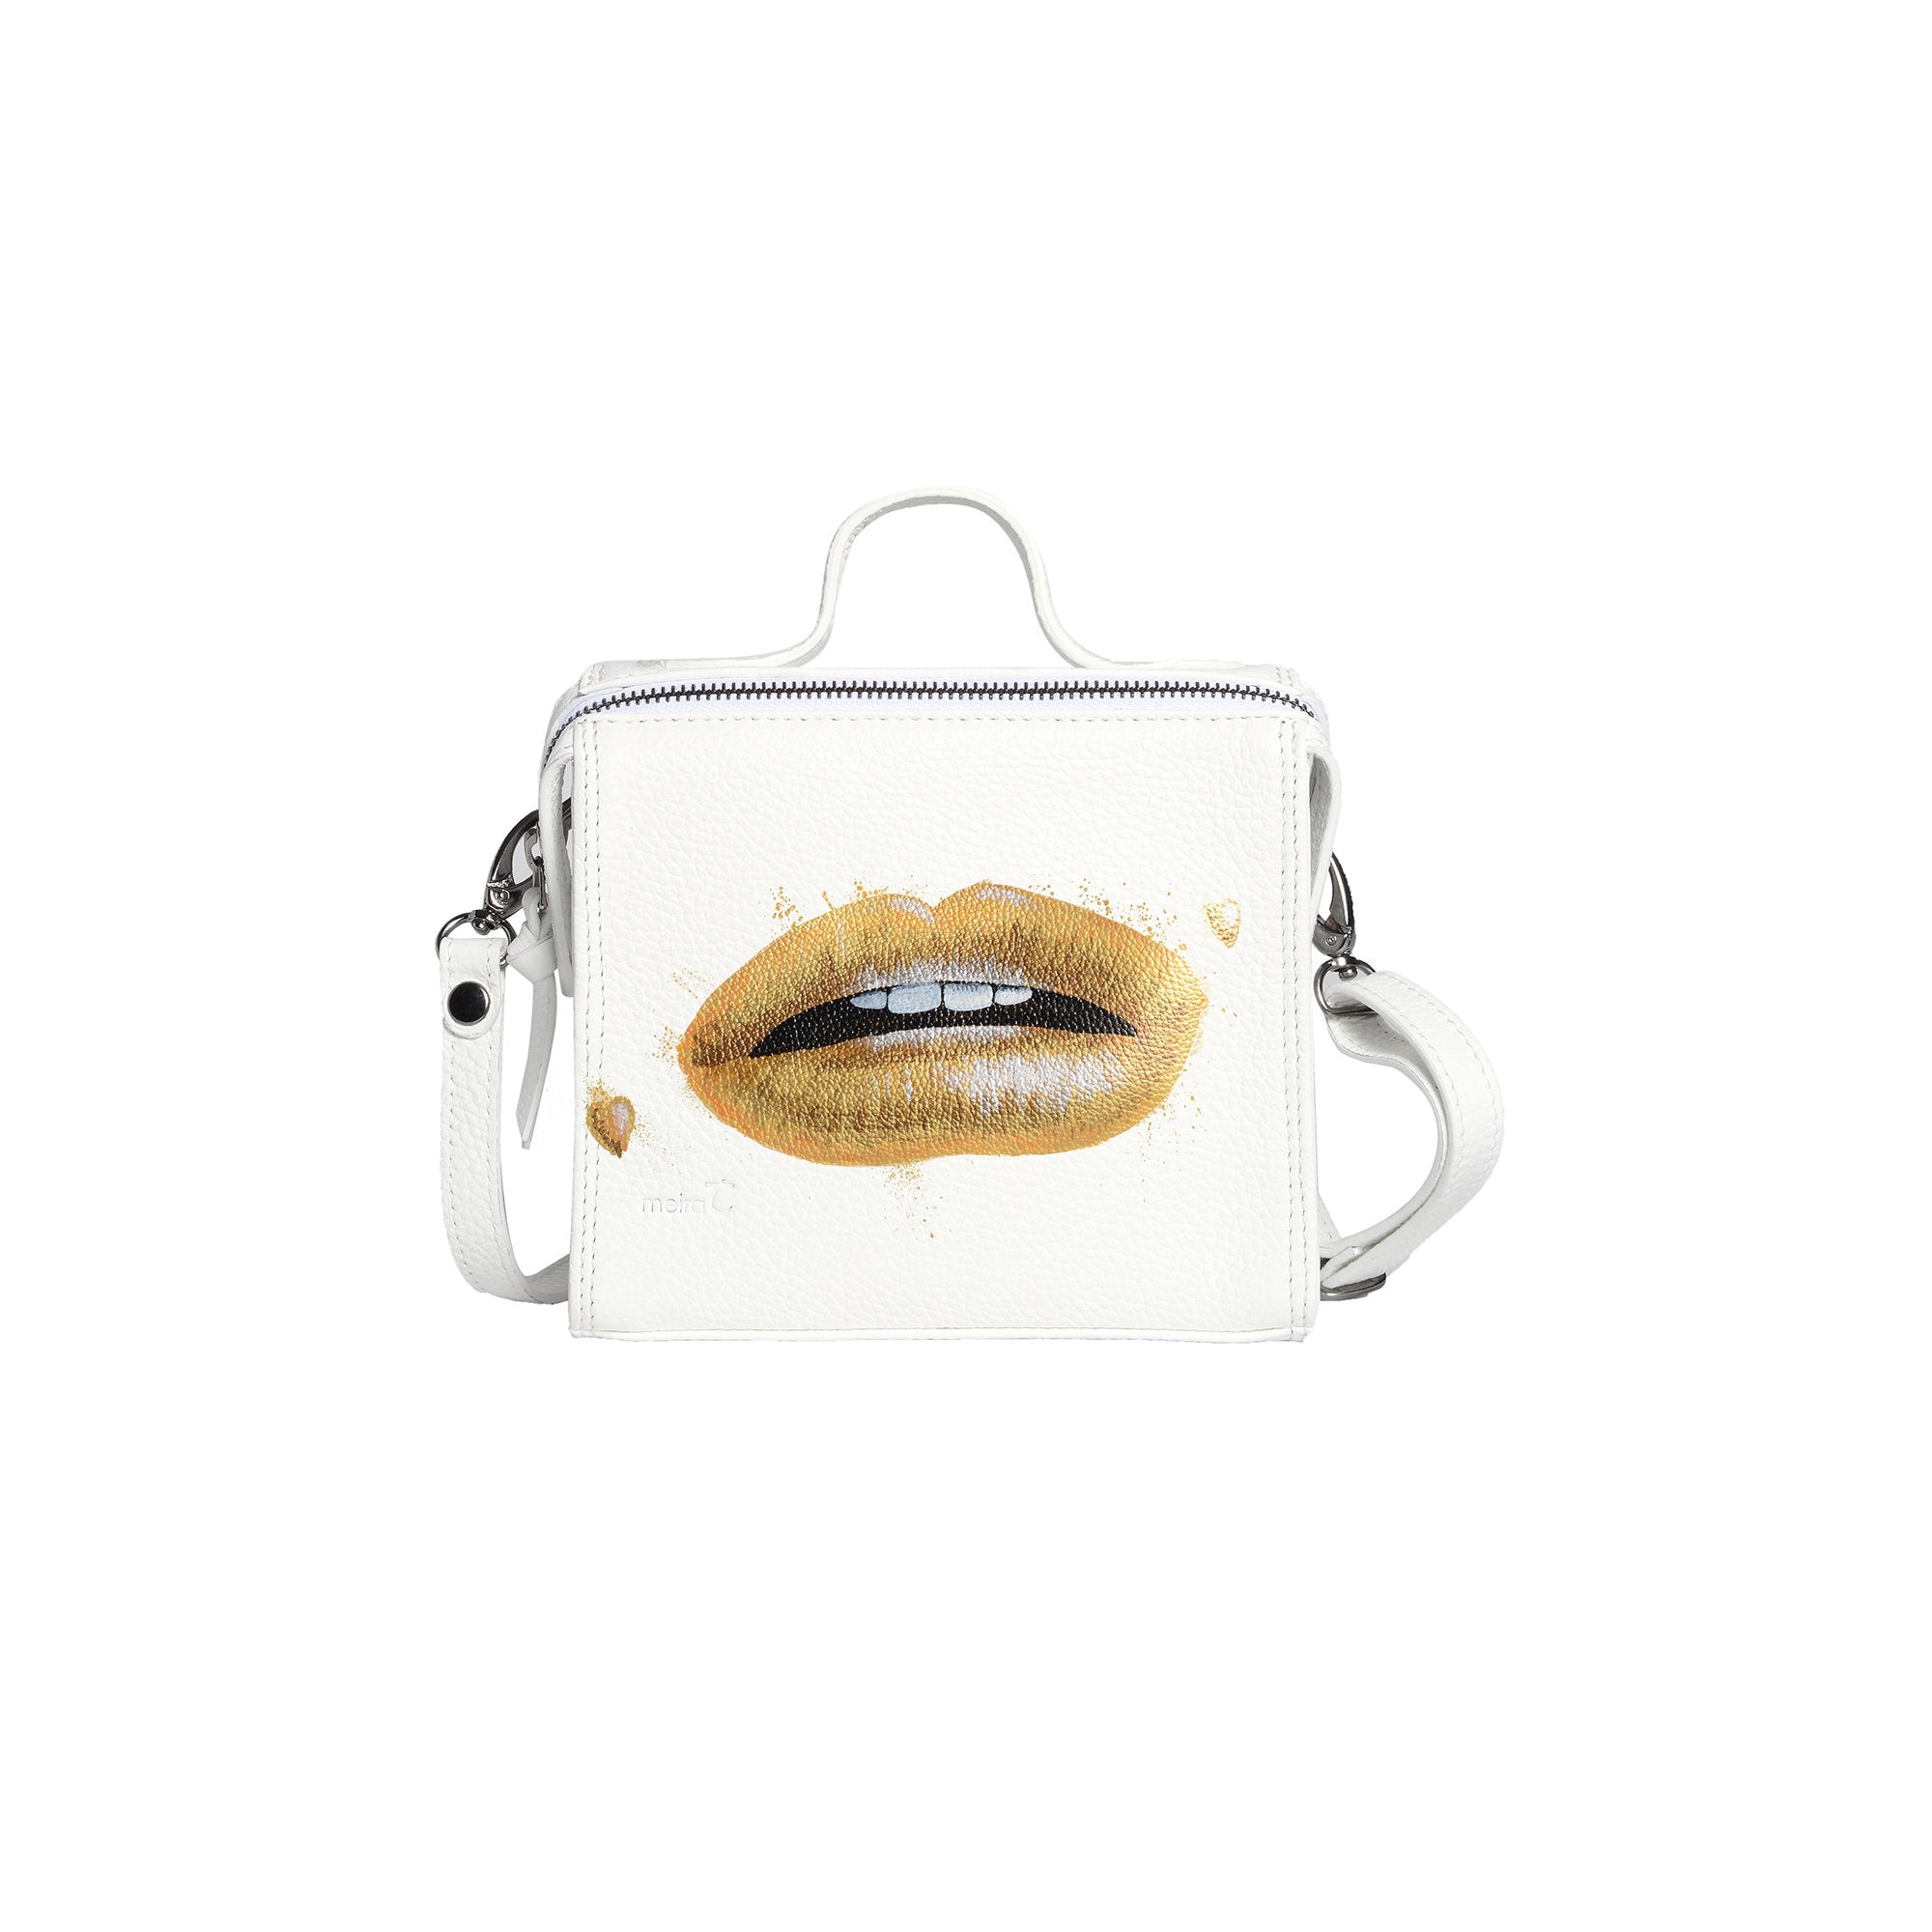 The Mini Meira Metallic White Bag with Gold Lips